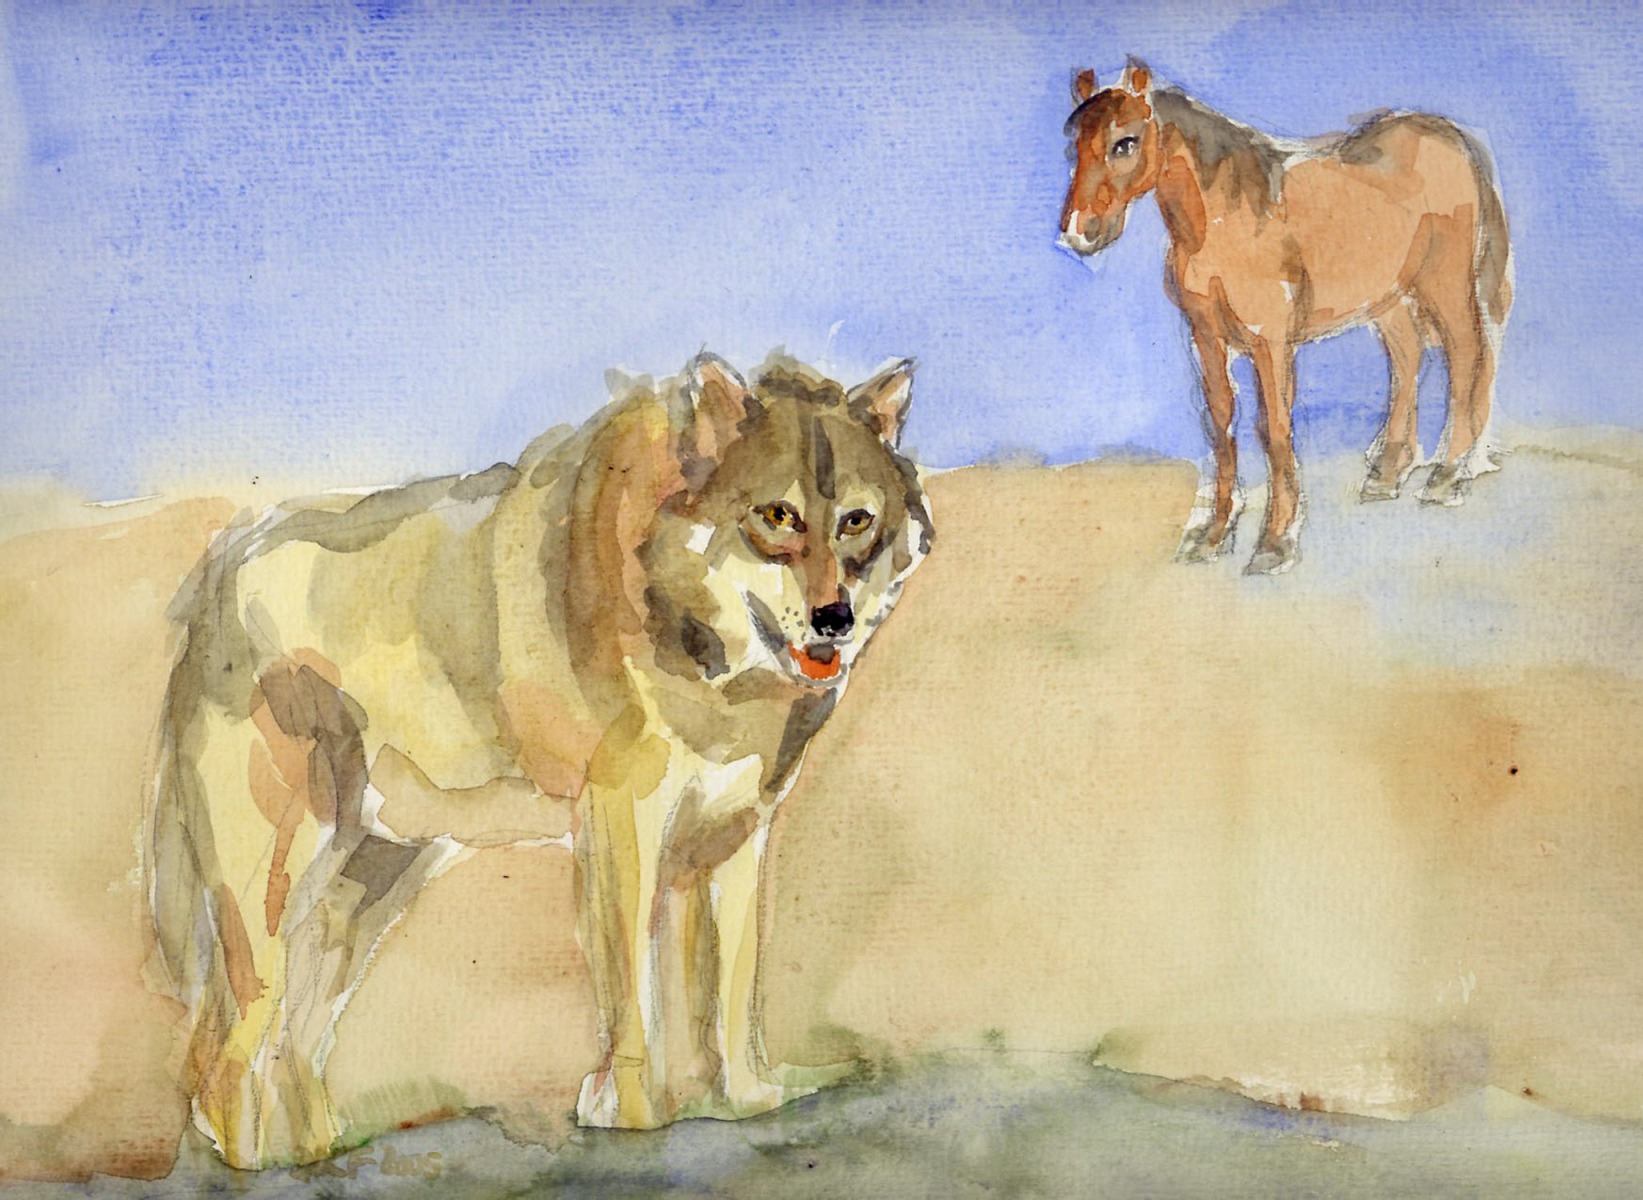 Das Pferd und der Wolf